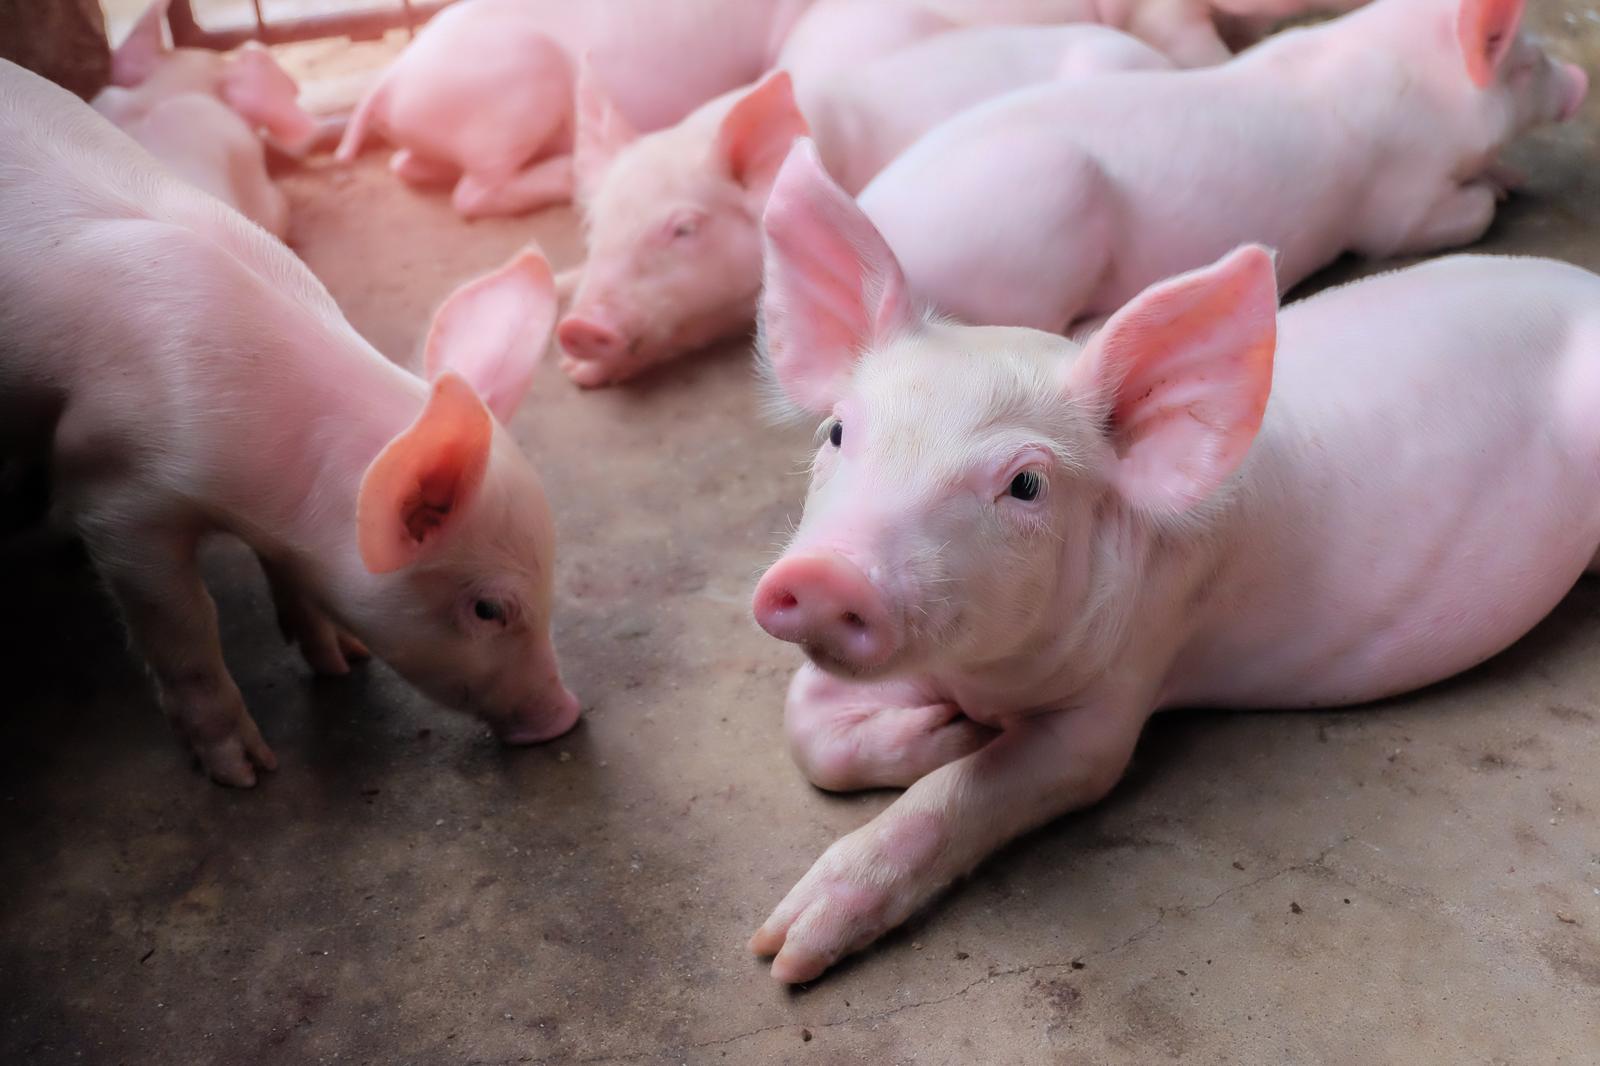 PÕLVA PEEKON OÜ - Raising of swine/pigs in Estonia